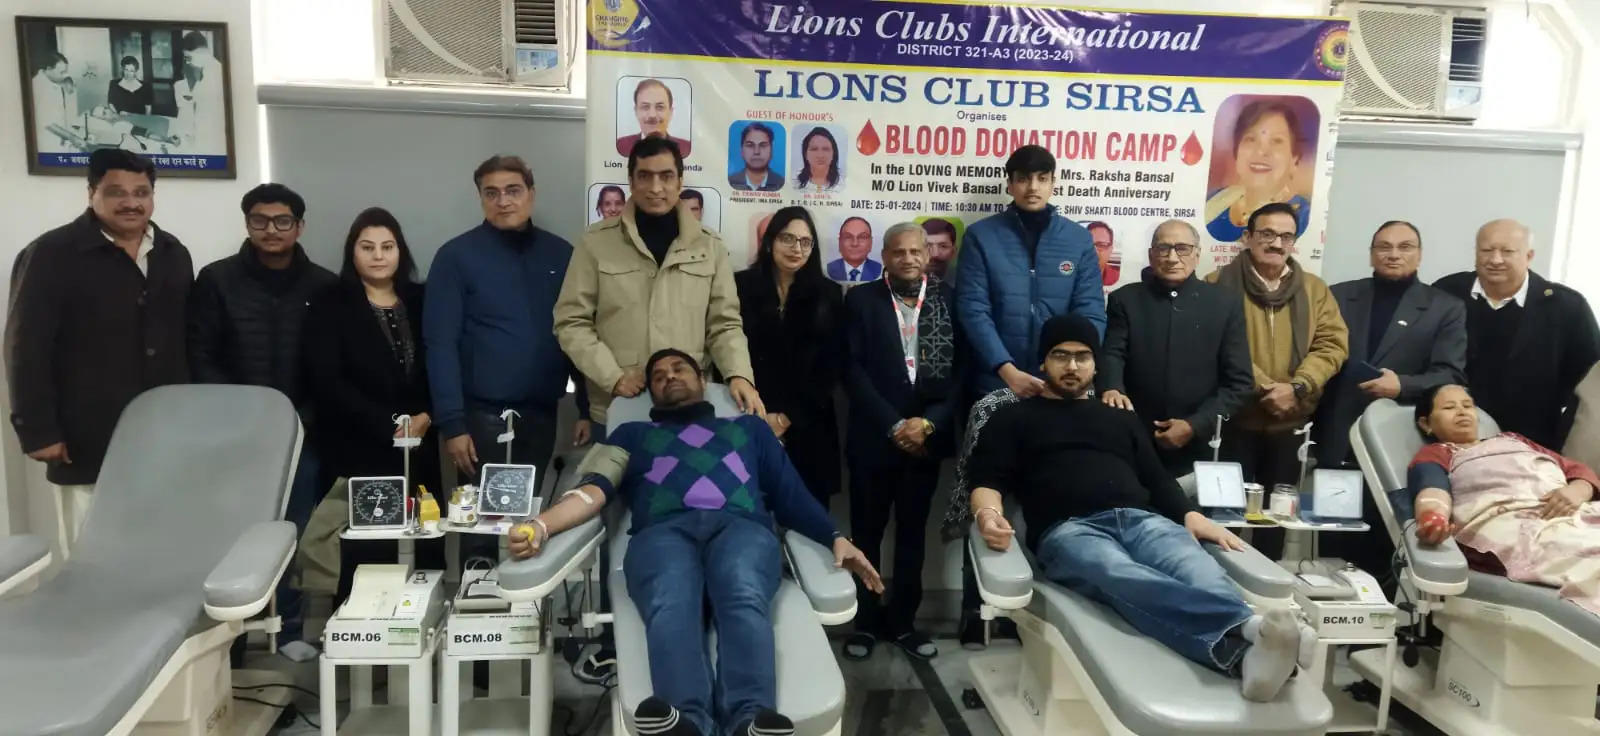 लॉयन्स क्लब ने लगाया रक्तदान शिविर, 32 यूनिट रक्त एकत्र